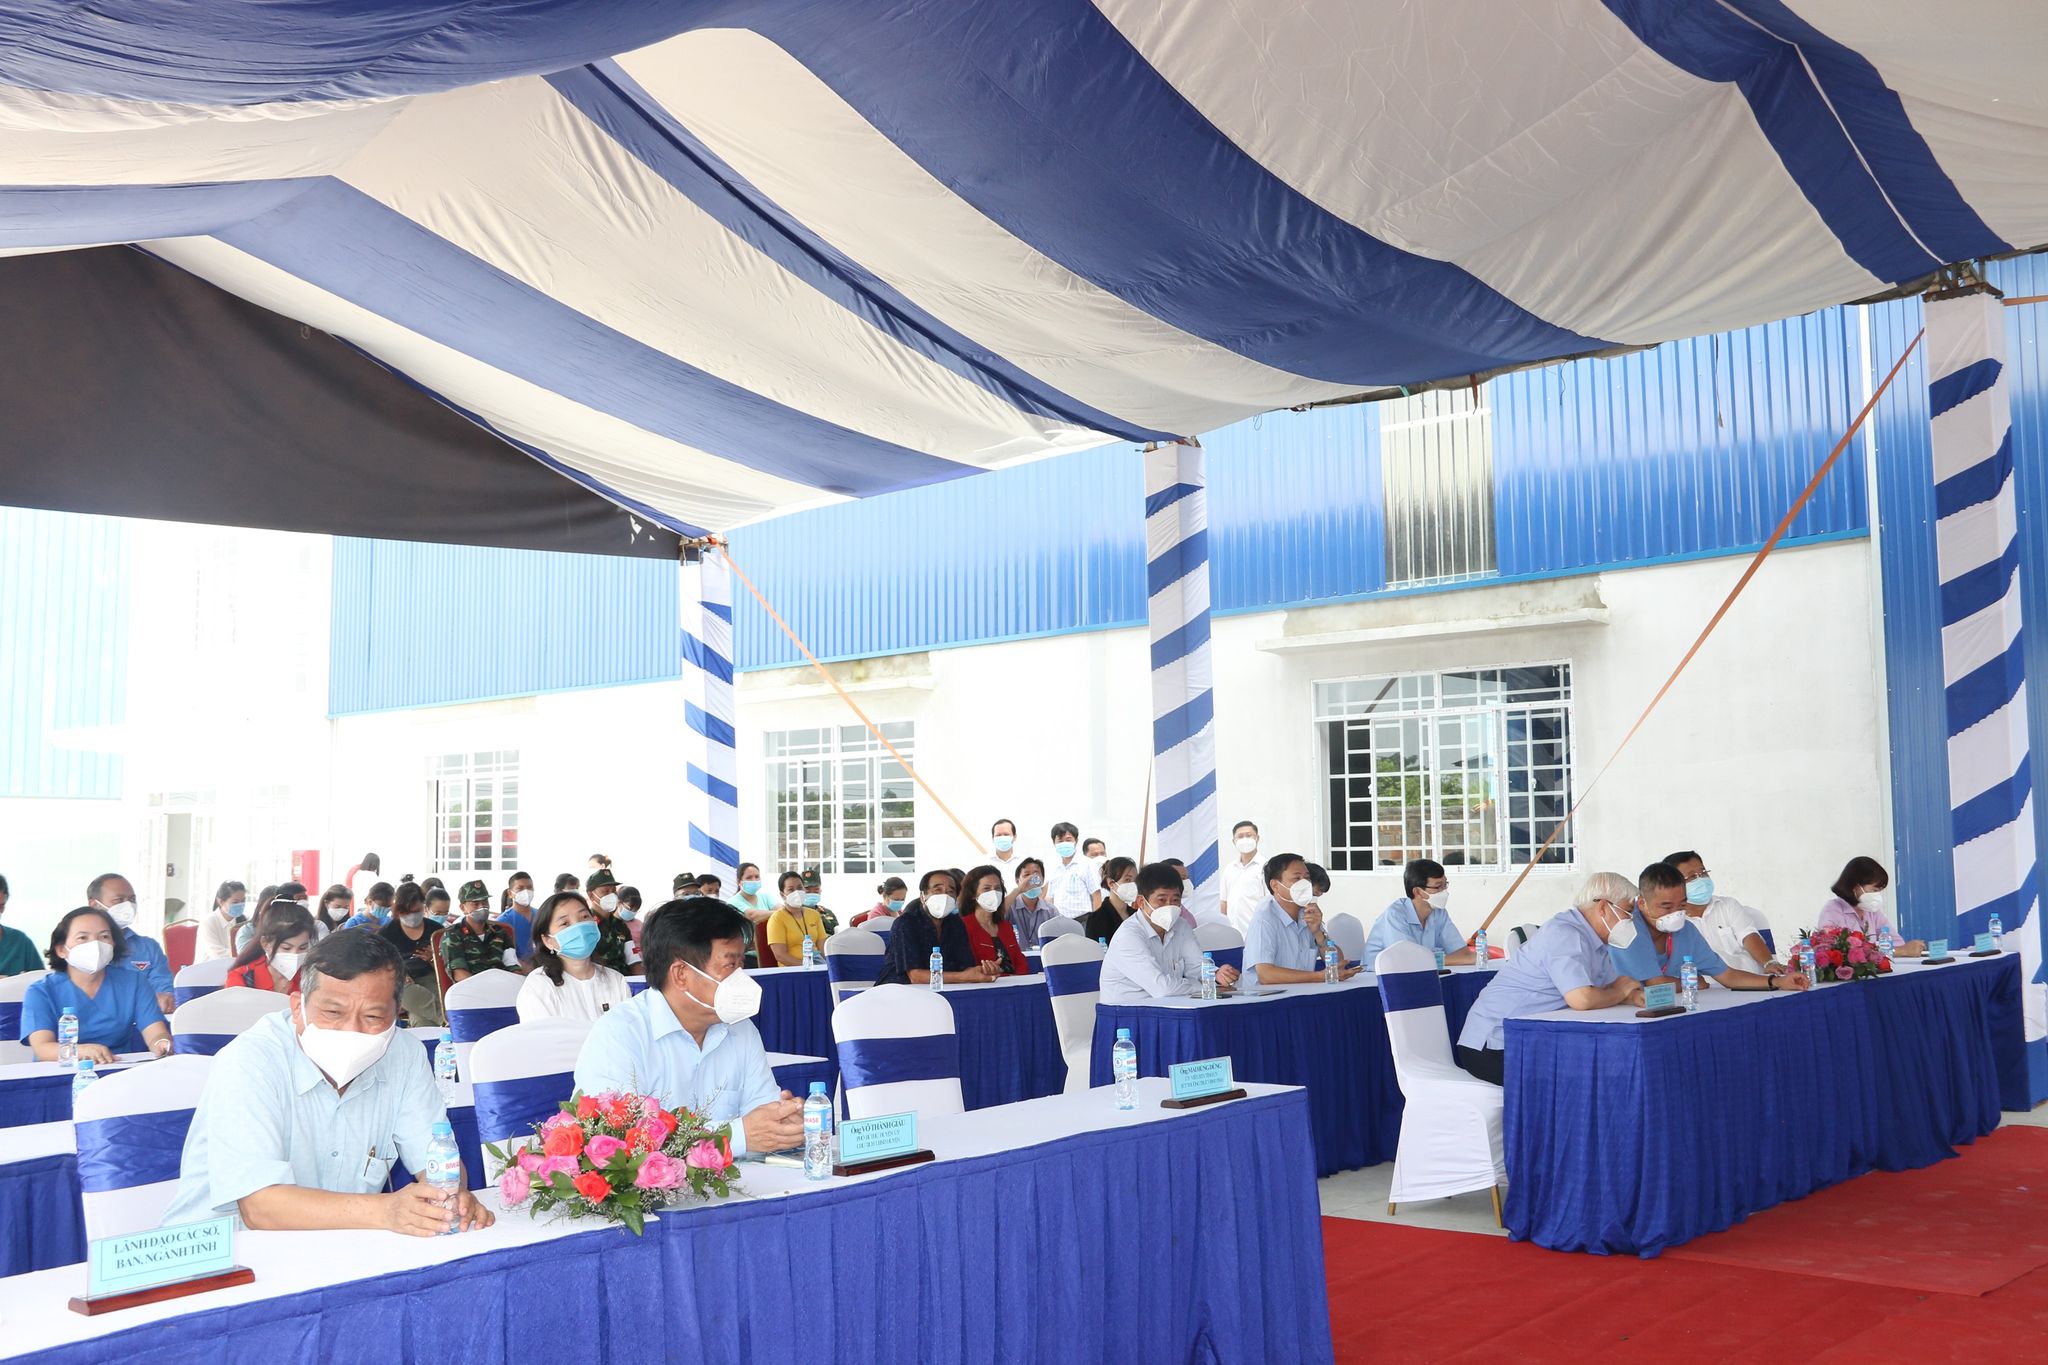 Các đại biểu tham gia lễ công bố và đưa vào hoạt động khu điều trị bệnh nhân COVID-19 Phong Thạnh – Bàu Bàng tại ấp Lai Khê, xã Lai Hưng huyện Bàu Bàng. Ảnh Hoàng Tú